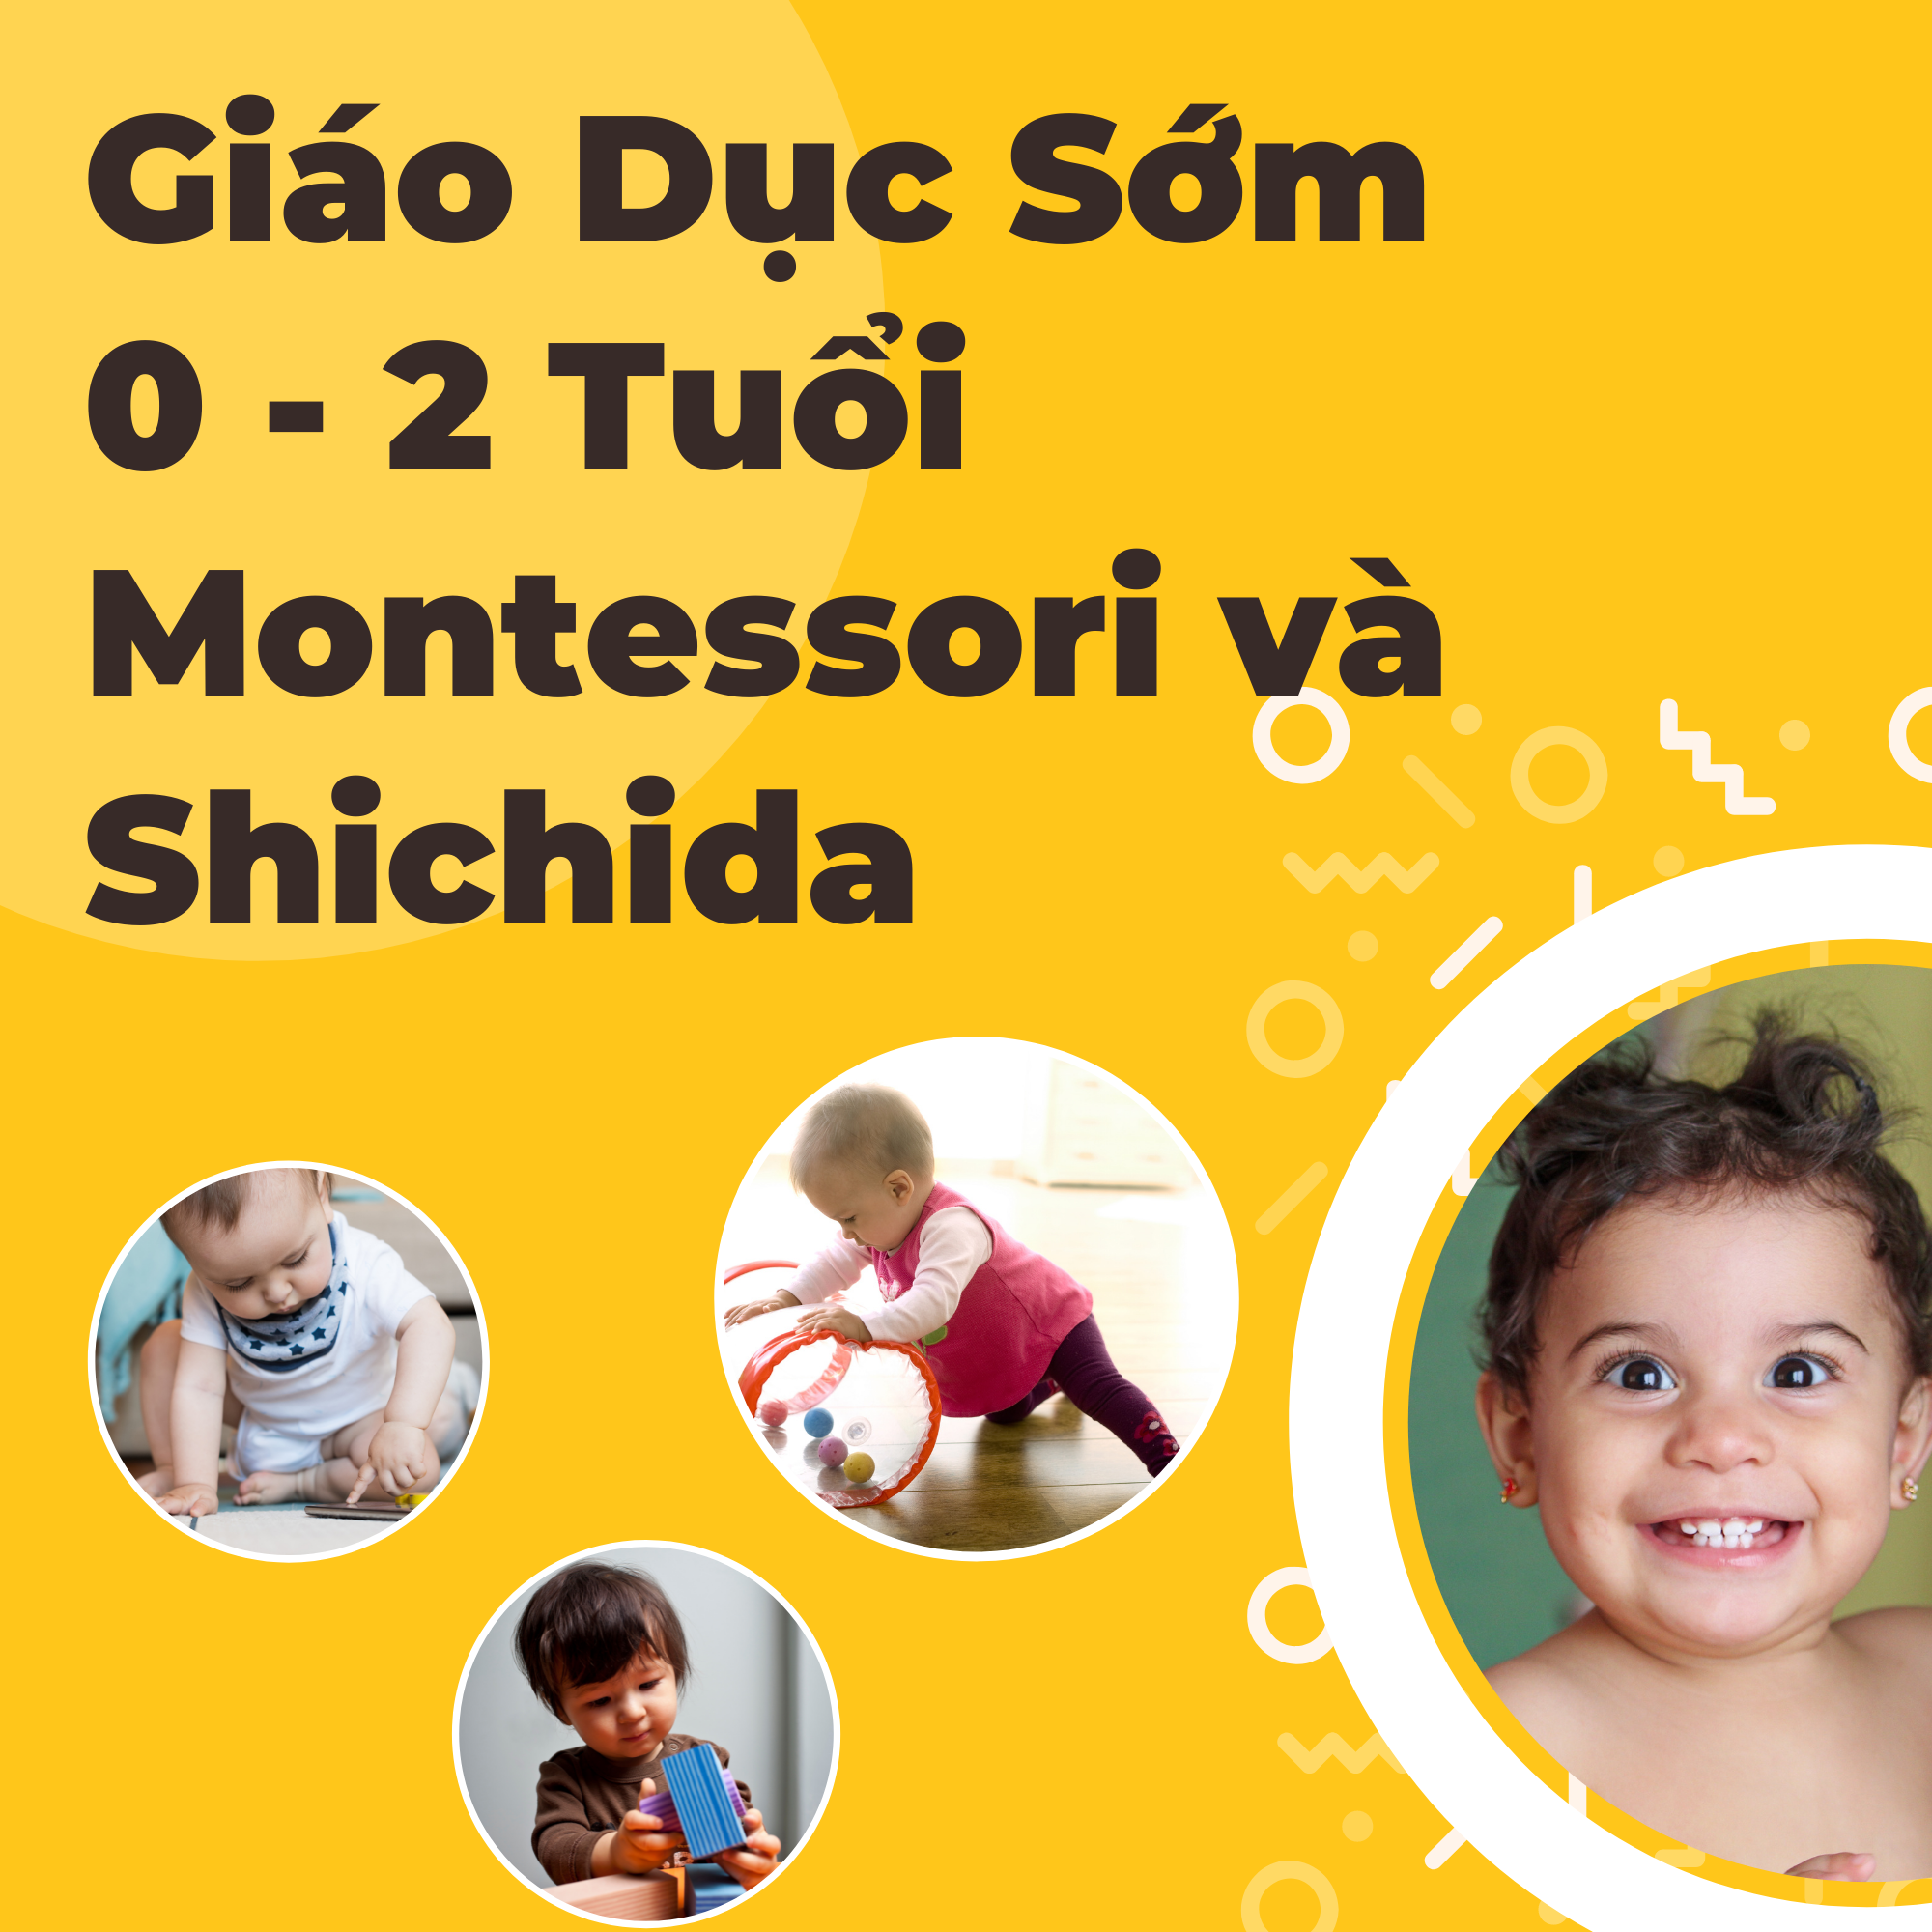 Khóa học Giáo dục sớm cho trẻ 0 - 2 tuổi theo phương pháp Montessori và Shichida